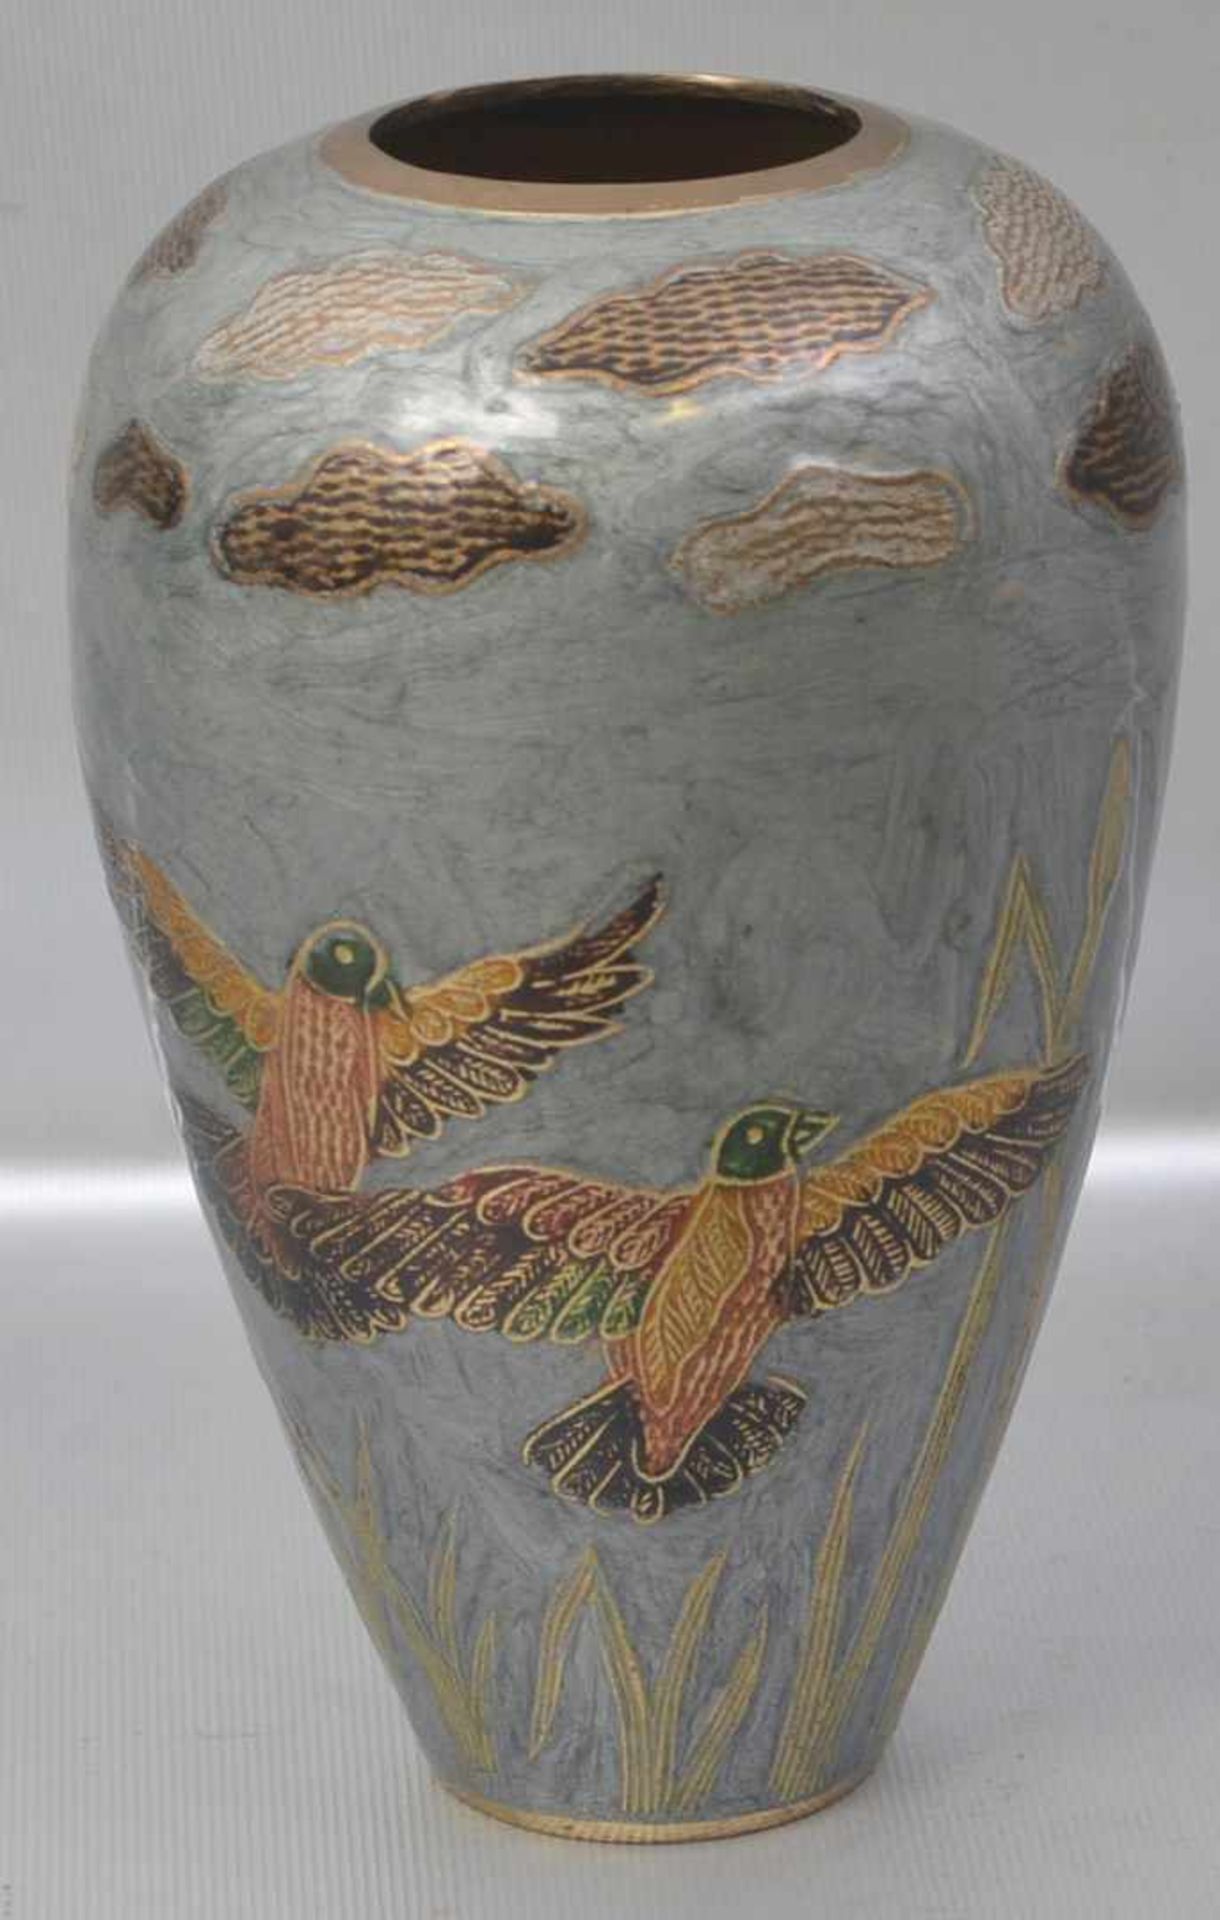 Vase Messing, Wandung mit bunten Vögeln und Gräsern verziert, H 17 cm